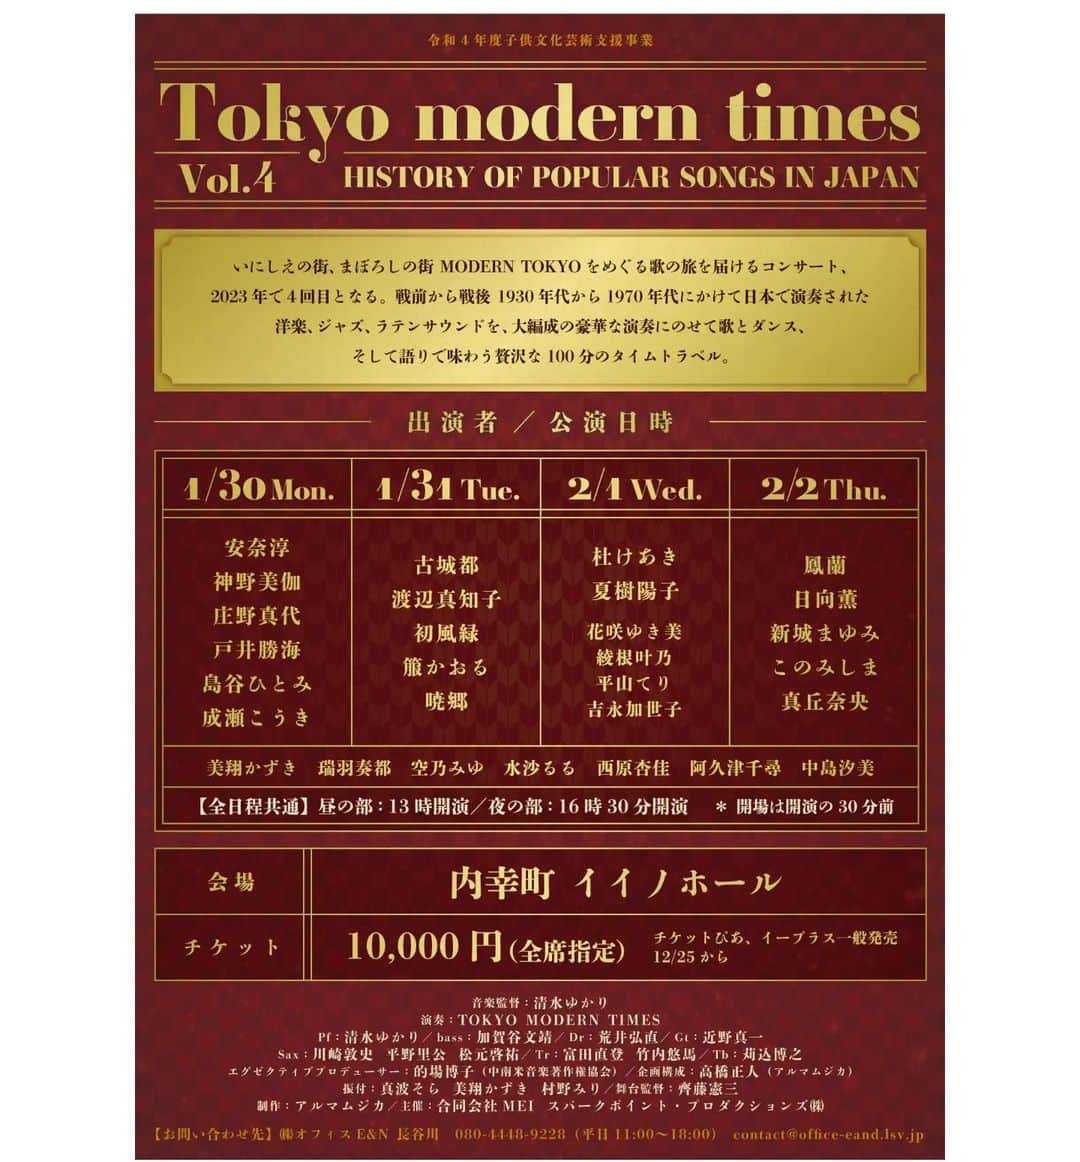 水沙瑠流のインスタグラム：「.⁡ ⁡【お知らせ⁡】⁡⁡ ⁡⁡ ⁡『Tokyo modern times Vol.4』⁡ こちらのシリーズに、今回も出演させて頂きます⁡✨⁡ ⁡⁡⁡ ⁡私は1月30,31日の2日間に出演させて頂きます！ ⁡ ⁡皆様、ぜひ足をお運び頂きましたら嬉しいです🥰⁡ ⁡宜しくお願いいたします！⁡ ⁡⁡ ⁡⁡チケットのお申し込みにつきましては お名前、公演日時、枚数、当日のご連絡先を 下記のアドレスまでお願い致します。 ruru_mizusa@yahoo.co.jp⁡⁡⁡⁡ ⁡ ⁡⁡ ⁡令和4年度子供文化芸術支援事業  Tokyo modern times Vol.4⁡ ⁡~HISTORY OF POPULAR SONGS IN JAPAN 開催決定!!  いにしえの街、まぼろしの街 MODERN TOKYOをめぐる歌の旅を届けるコンサート、  2023年で４回目となる。戦前から戦後　1930年代から1970年代にかけて日本で演奏された洋楽、ジャズ、ラテンサウンドを、大編成の豪華な演奏にのせて歌とダンス、そして語りで味わう贅沢な100分のタイムトラベル。 ⁡ ⁡ 【公演日時】  1/30（月）　昼の部　13時開演　夜の部　16時30分　開演  1/31（火） 昼の部　13時開演　夜の部　16時30分　開演  2/1 （水）　昼の部　13時開演　夜の部　16時30分　開演  2/2 (木)　 昼の部　13時開演　夜の部　16時30分　開演 (開場はそれぞれ　30分前) ⁡ ⁡ 【場所】　内幸町　イイノホール ⁡ ⁡ 【チケット】　10,000円（全席指定）　　 ⁡ ⁡ 【出演】  1/30  安奈淳　神野美伽　庄野真代　島谷ひとみ　成瀬こうき  1/31 古城都　渡辺真知子　初風緑　　箙かおる  2/1 杜けあき　夏樹陽子　花咲ゆき美　綾根叶乃　平山てり 吉永加世子  2/2 鳳蘭 日向薫　新城まゆみ　このみしま　真丘奈央 ⁡ ⁡ 美翔かずき　空乃みゆ 水沙るる　西原杏佳　阿久津千尋　中島汐美 ⁡ ⁡ 音楽監督 ⁡清水ゆかり⁡⁡ ⁡ 演奏　TOKYO MODERN TIMES Pf 清水ゆかり　bass 加賀谷文靖　Dr 荒井弘直　Gt 近野真一 Sax 川崎敦史　平野里公　松元啓祐　Tr 富田直登　竹内悠馬　Tb 苅込博之  エグゼクティブプロデューサー　的場博子（中南米音楽著作権協会） ⁡ ⁡ 企画構成　高橋正人（アルマムジカ） ⁡ ⁡ 振付⁡　真波そら　美翔かずき 　村野みり　 ⁡ ⁡ 舞台監督　齊藤憲三 ⁡ ⁡ 制作　アルマムジカ ⁡ ⁡ 主催　合同会社　MEI　スパークポイント・プロダクションズ㈱　 　  【お問い合わせ先】  ㈱オフィスE&N 長谷川  080-4448-9228（平日11:00~18:00）  contact@office-eandn.lsv.jp」